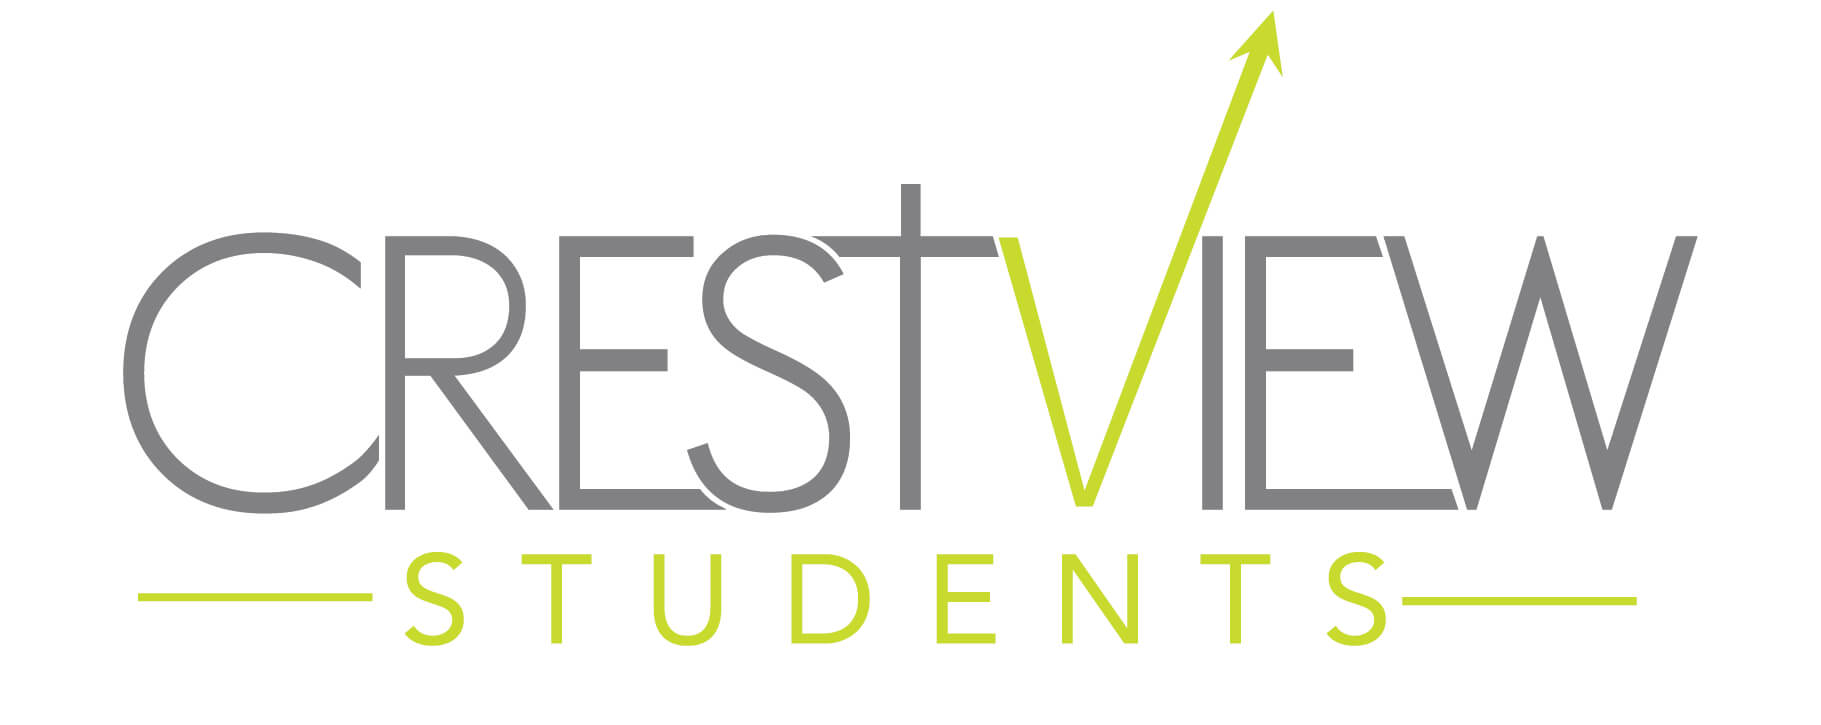 Crestview Students logo